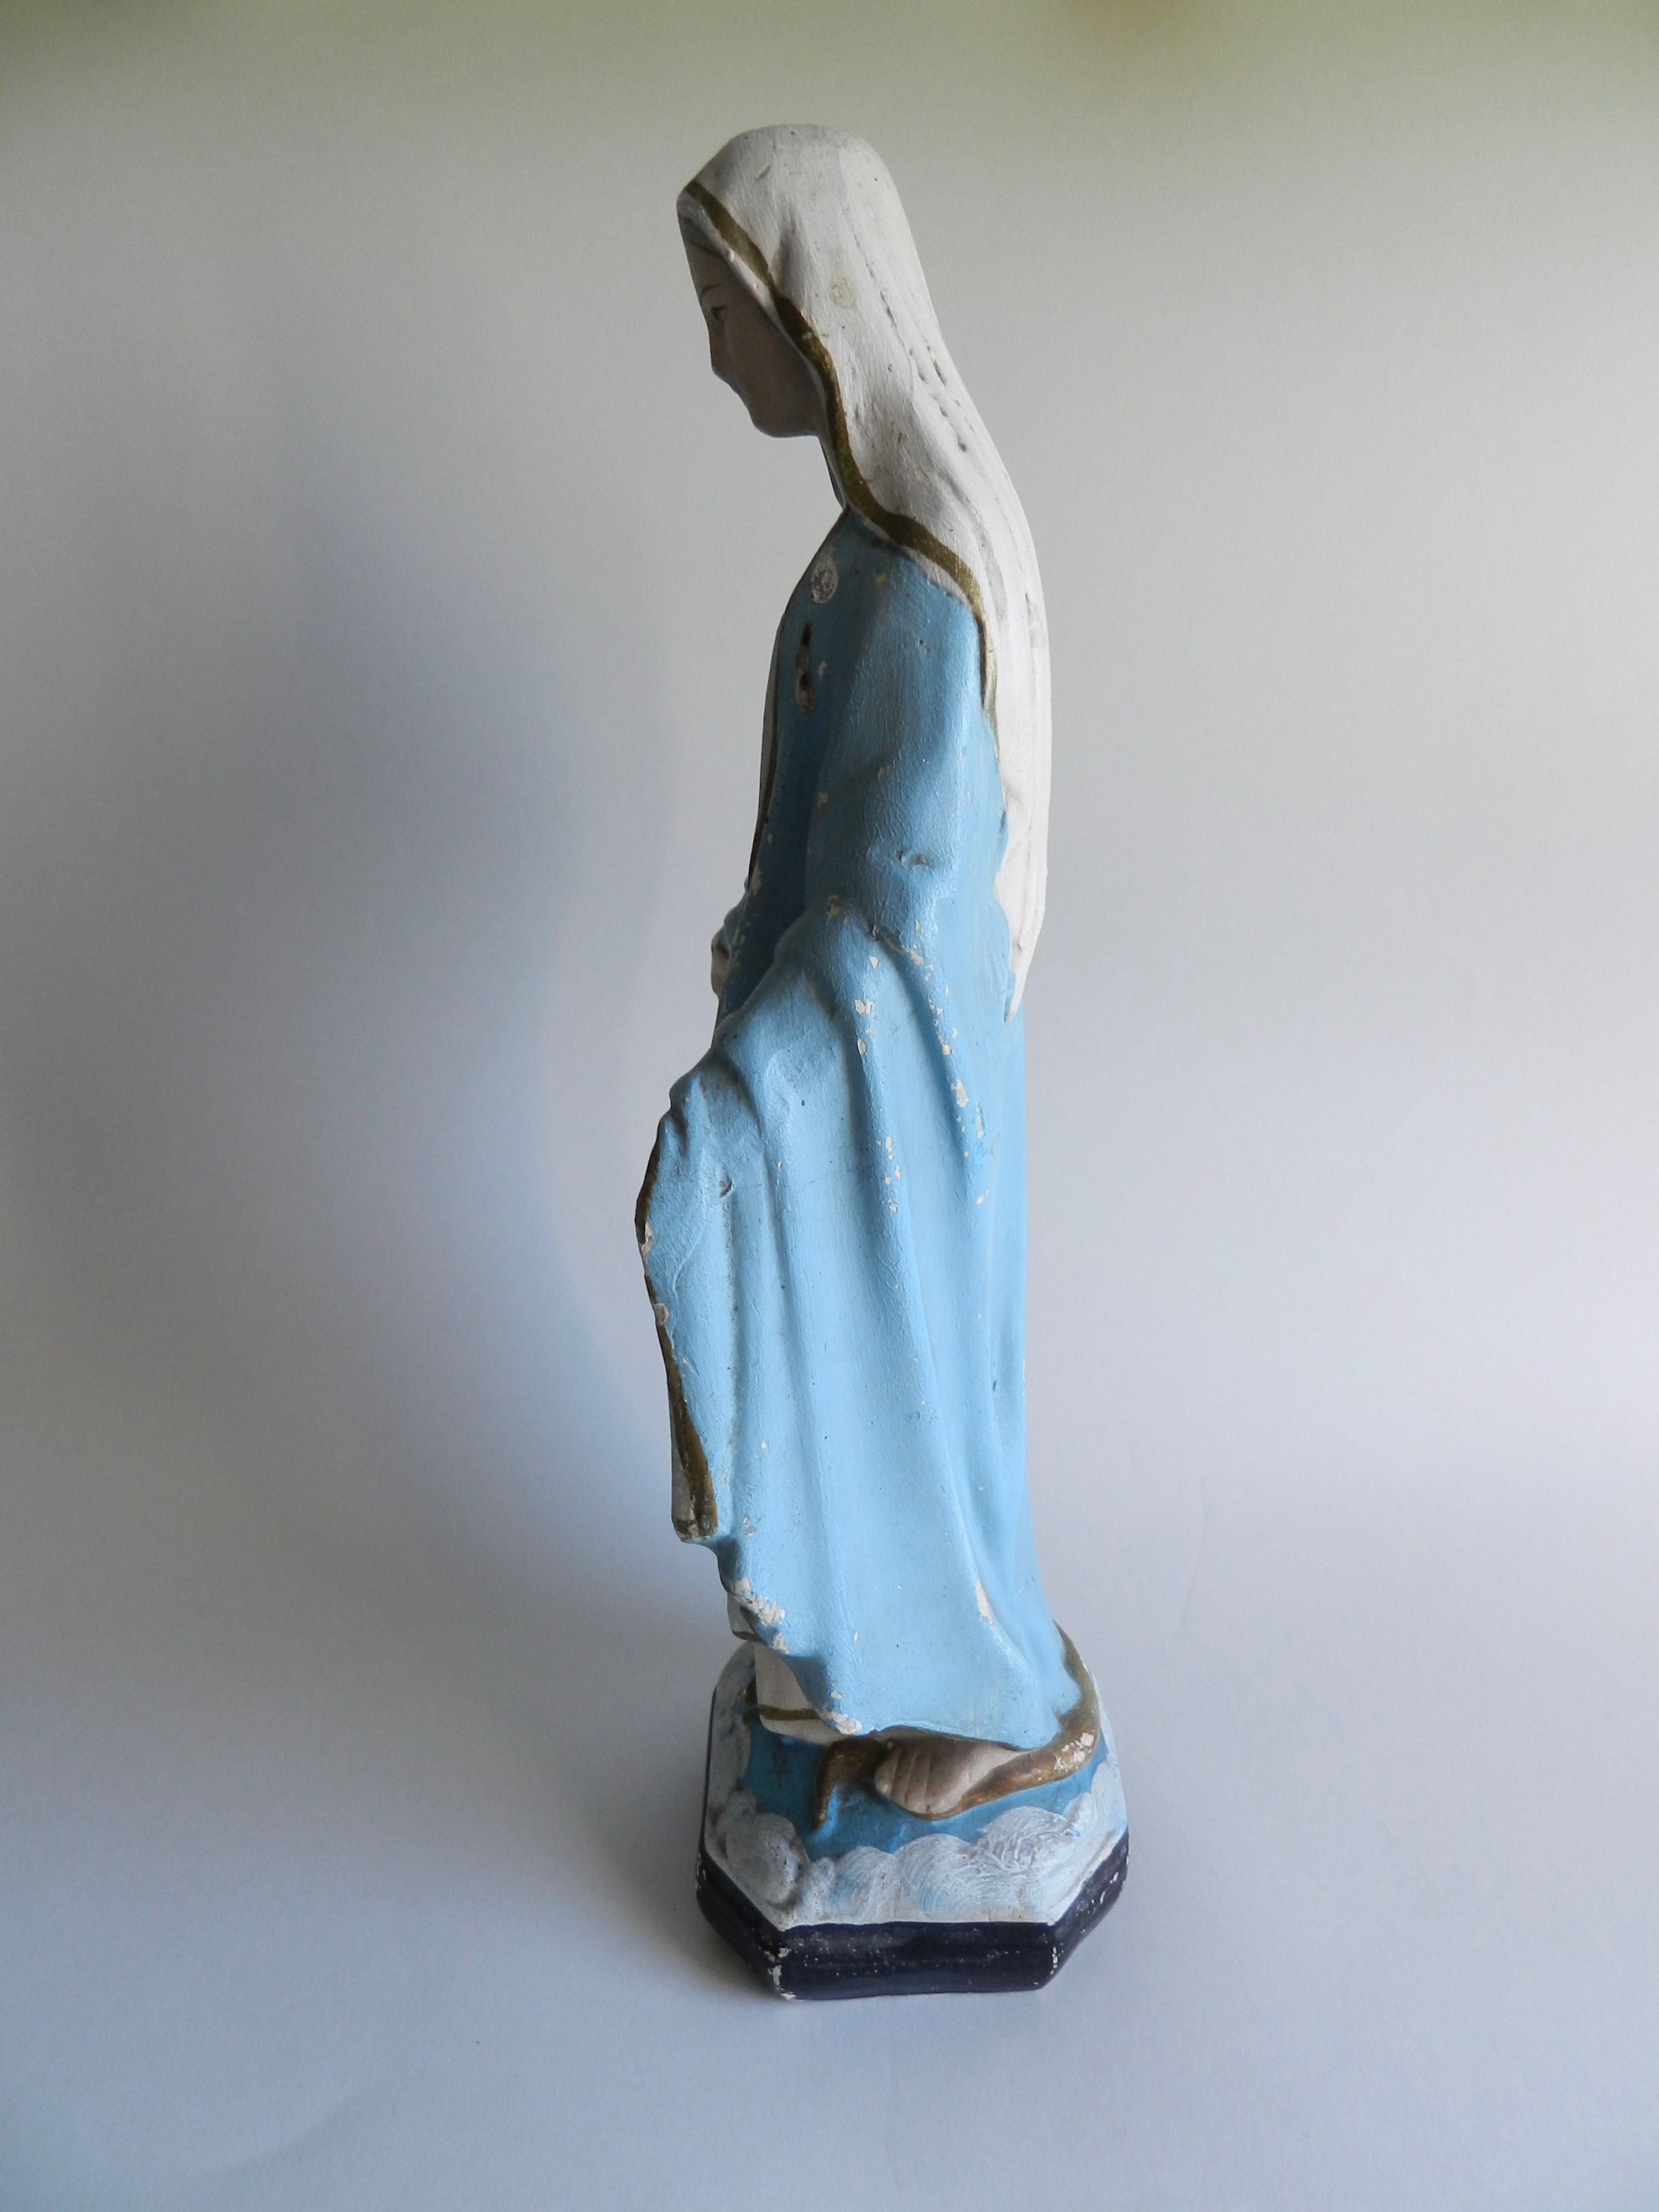 stara gipsowa figura Matka Boska 36 cm, do kapliczki